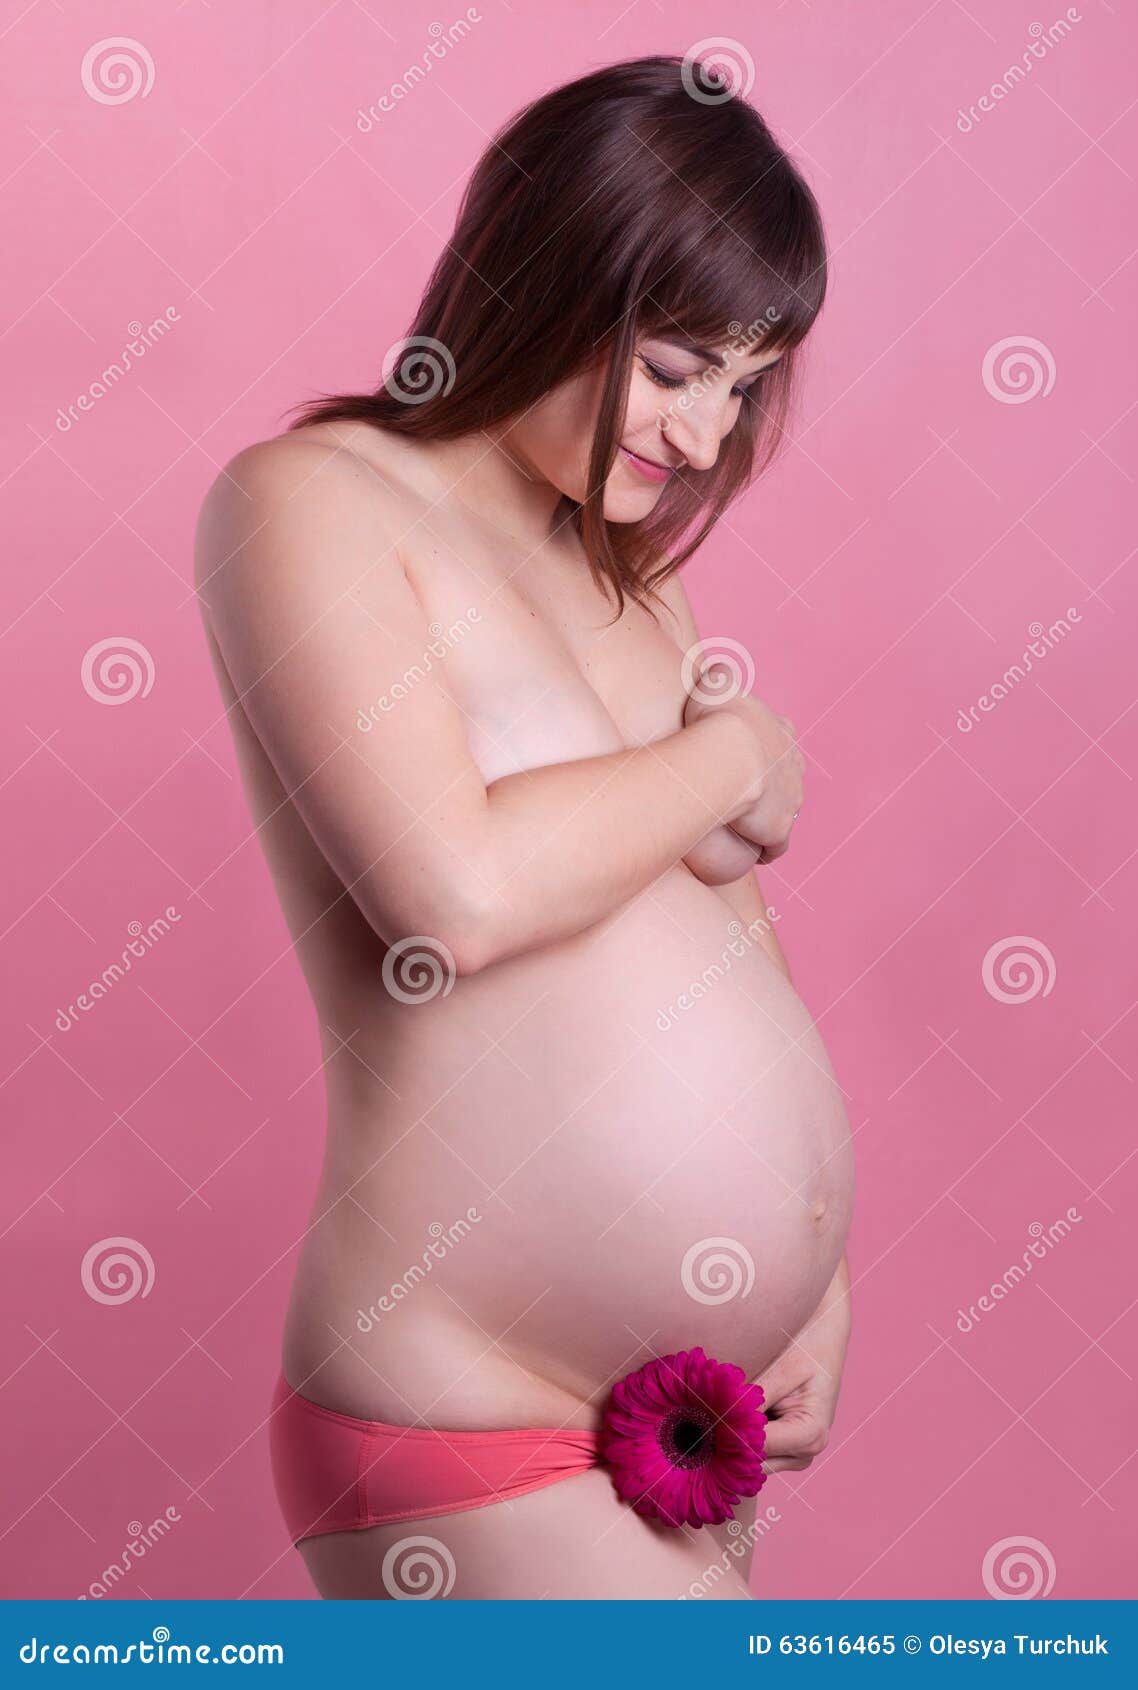 к чему видеть груди беременной фото 78